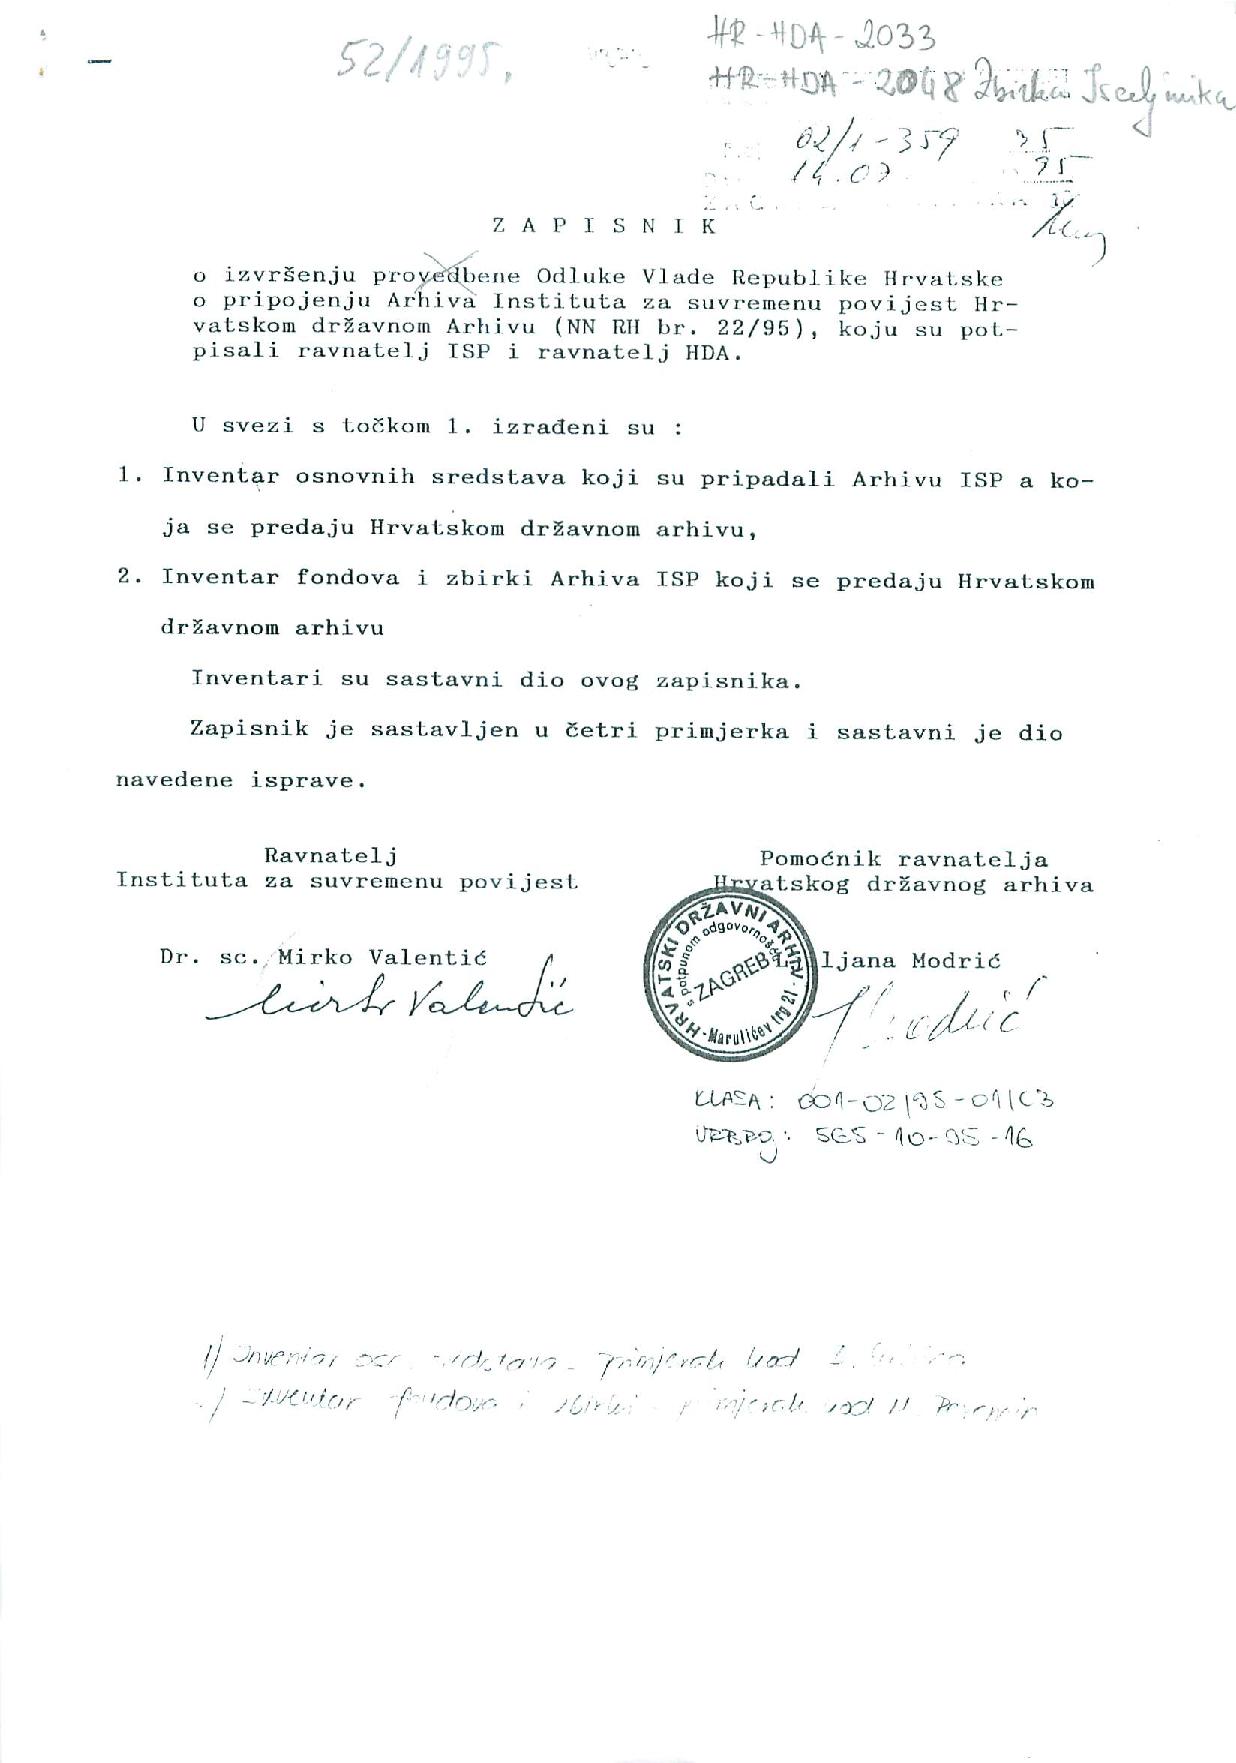 Zapisnik o isporuci između Instituta za suvremenu povijest i Hrvatskoga državnog arhiva, 14. srpnja 1995.